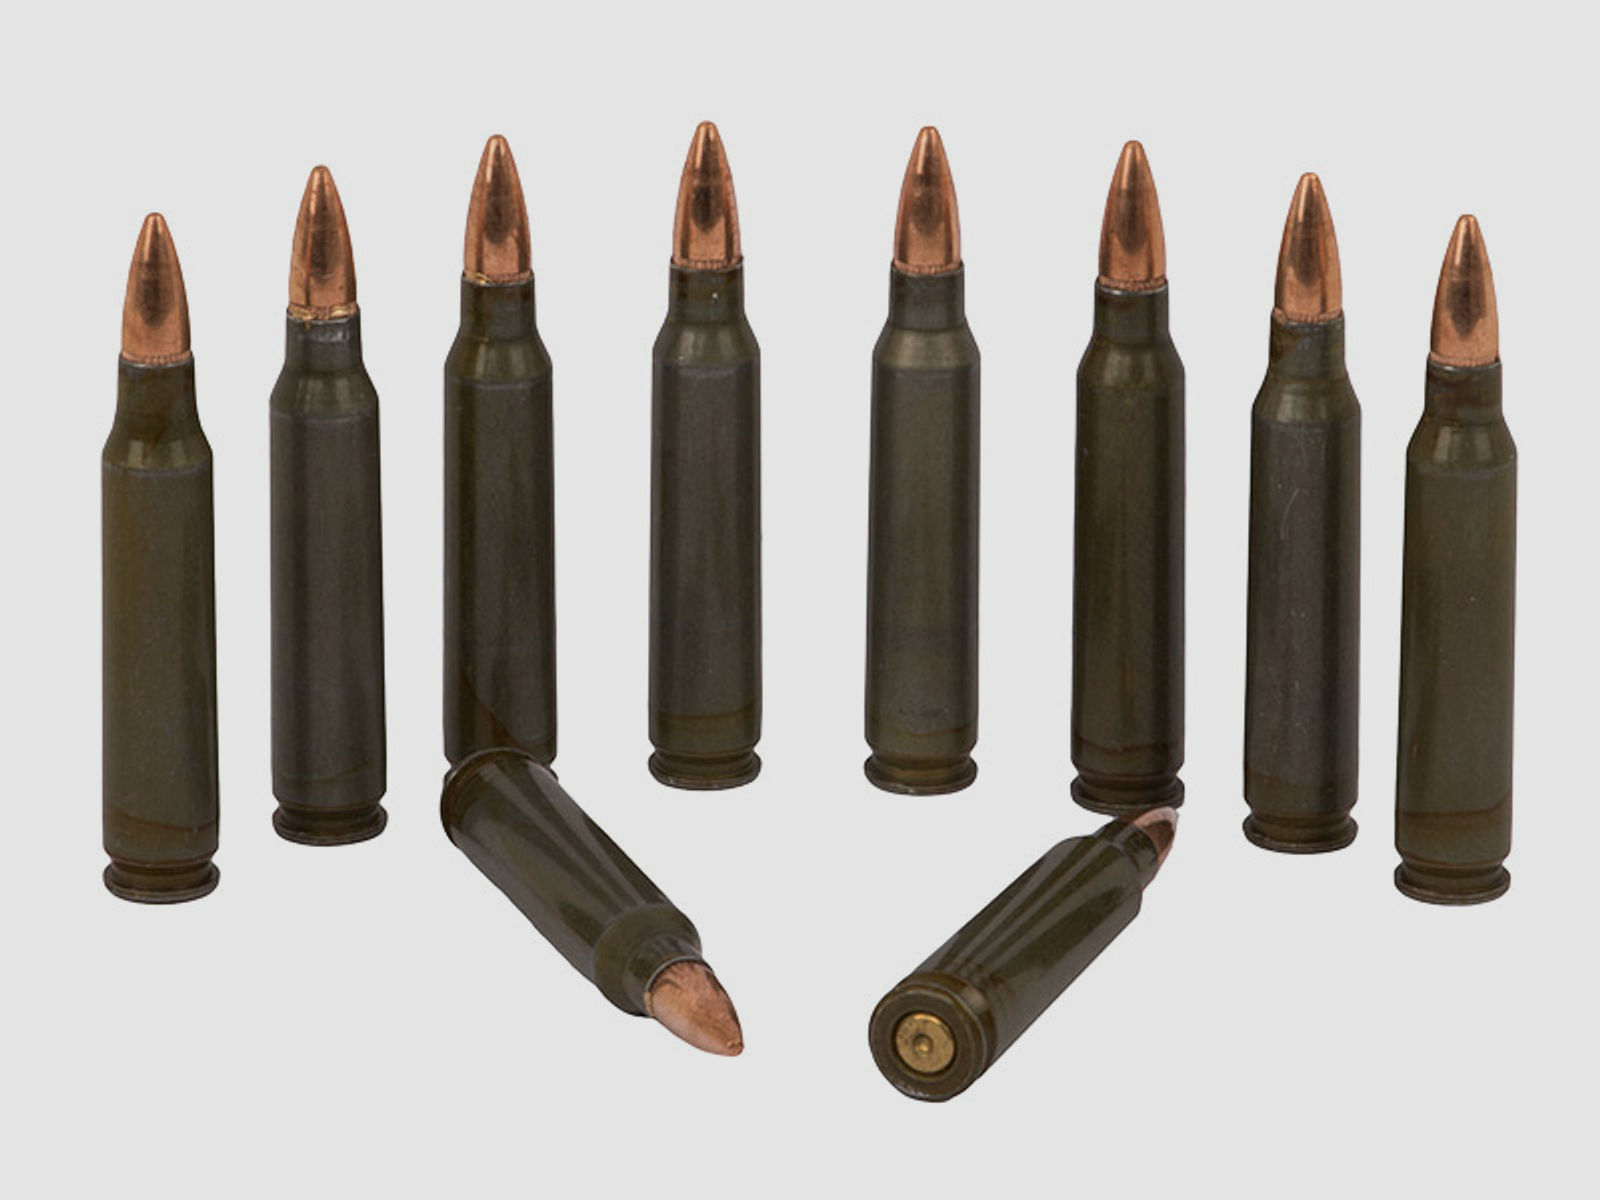 Dekopatronen Gewehrpatronen Kaliber 5,56 x 45 mm NATO .223 Remington mit grĂĽner StahlhĂĽlse blinde Originalpatronen 10 StĂĽck (P18)